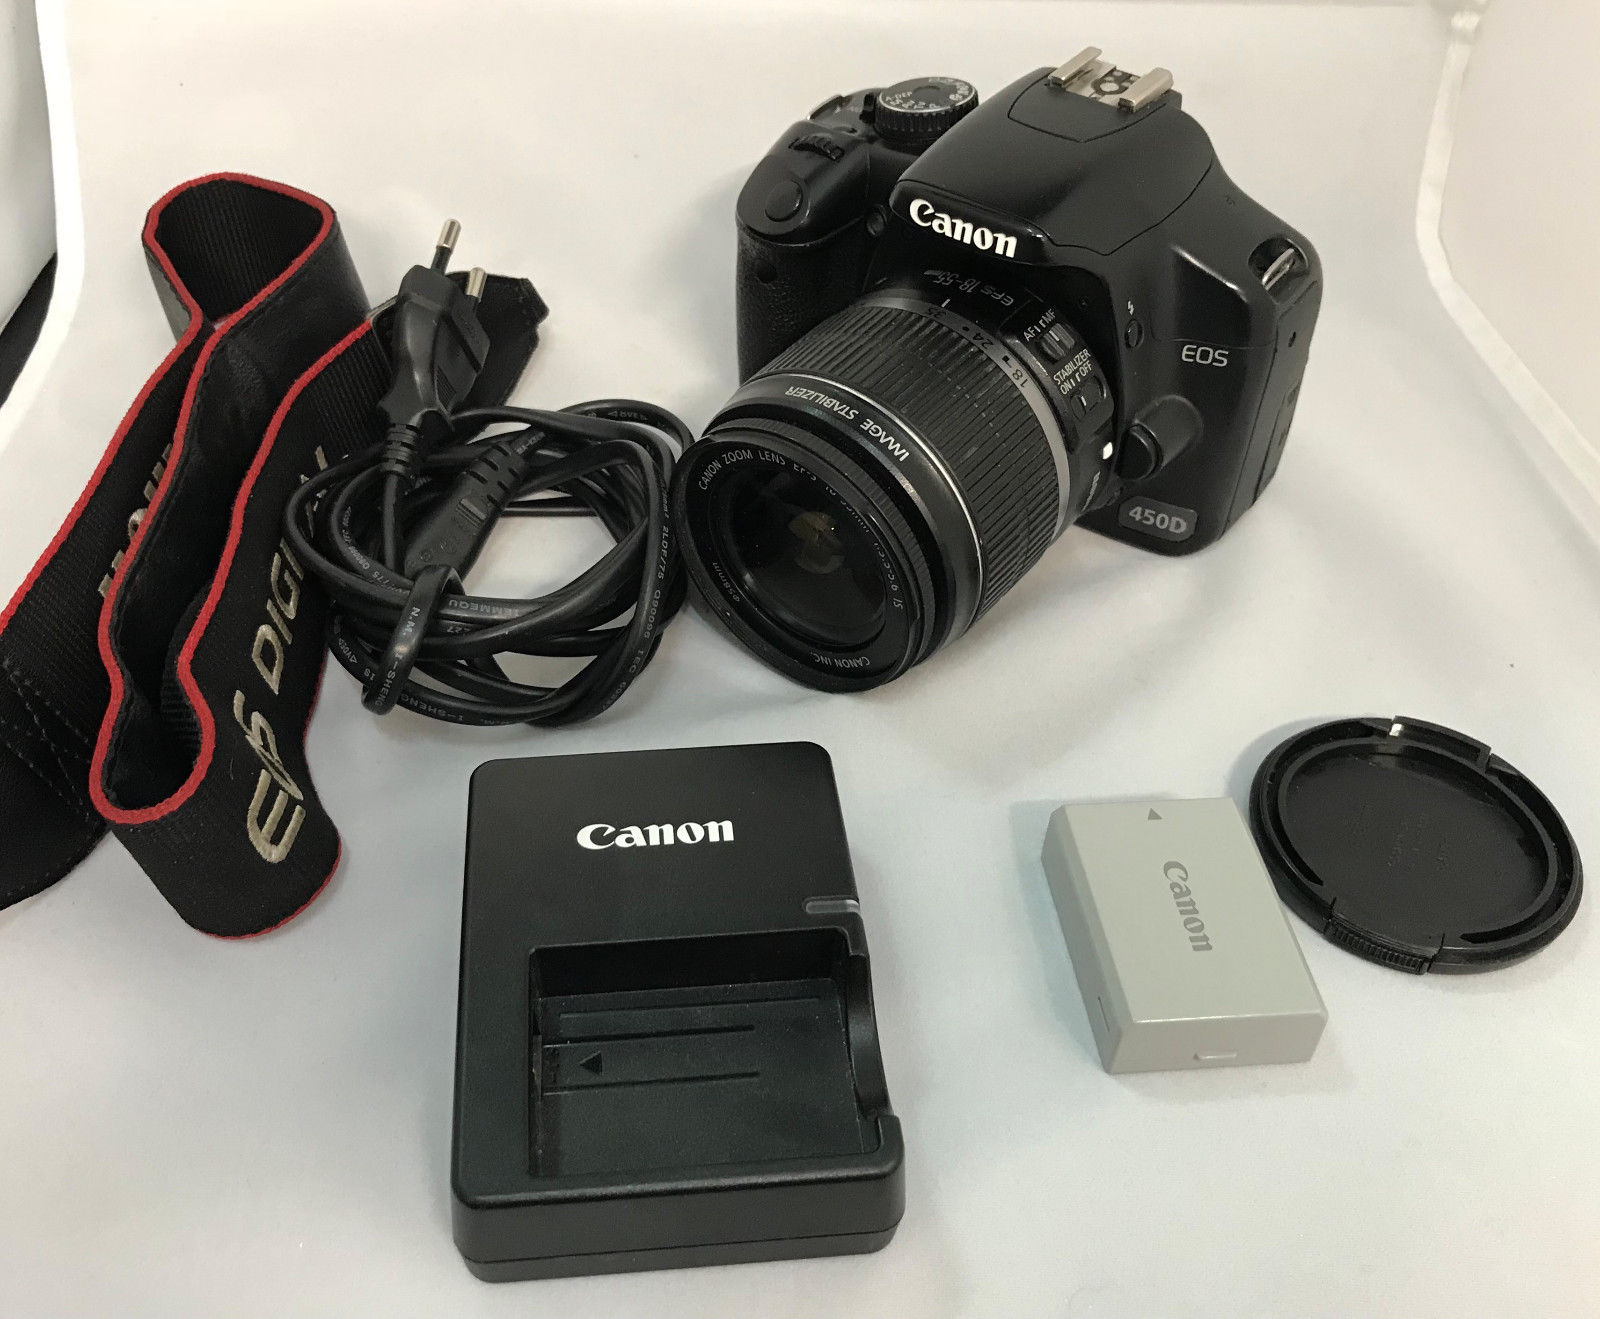 Canon EOS 450 D - digitale Spiegelreflex Kamera mit Objektiv 18-55mm